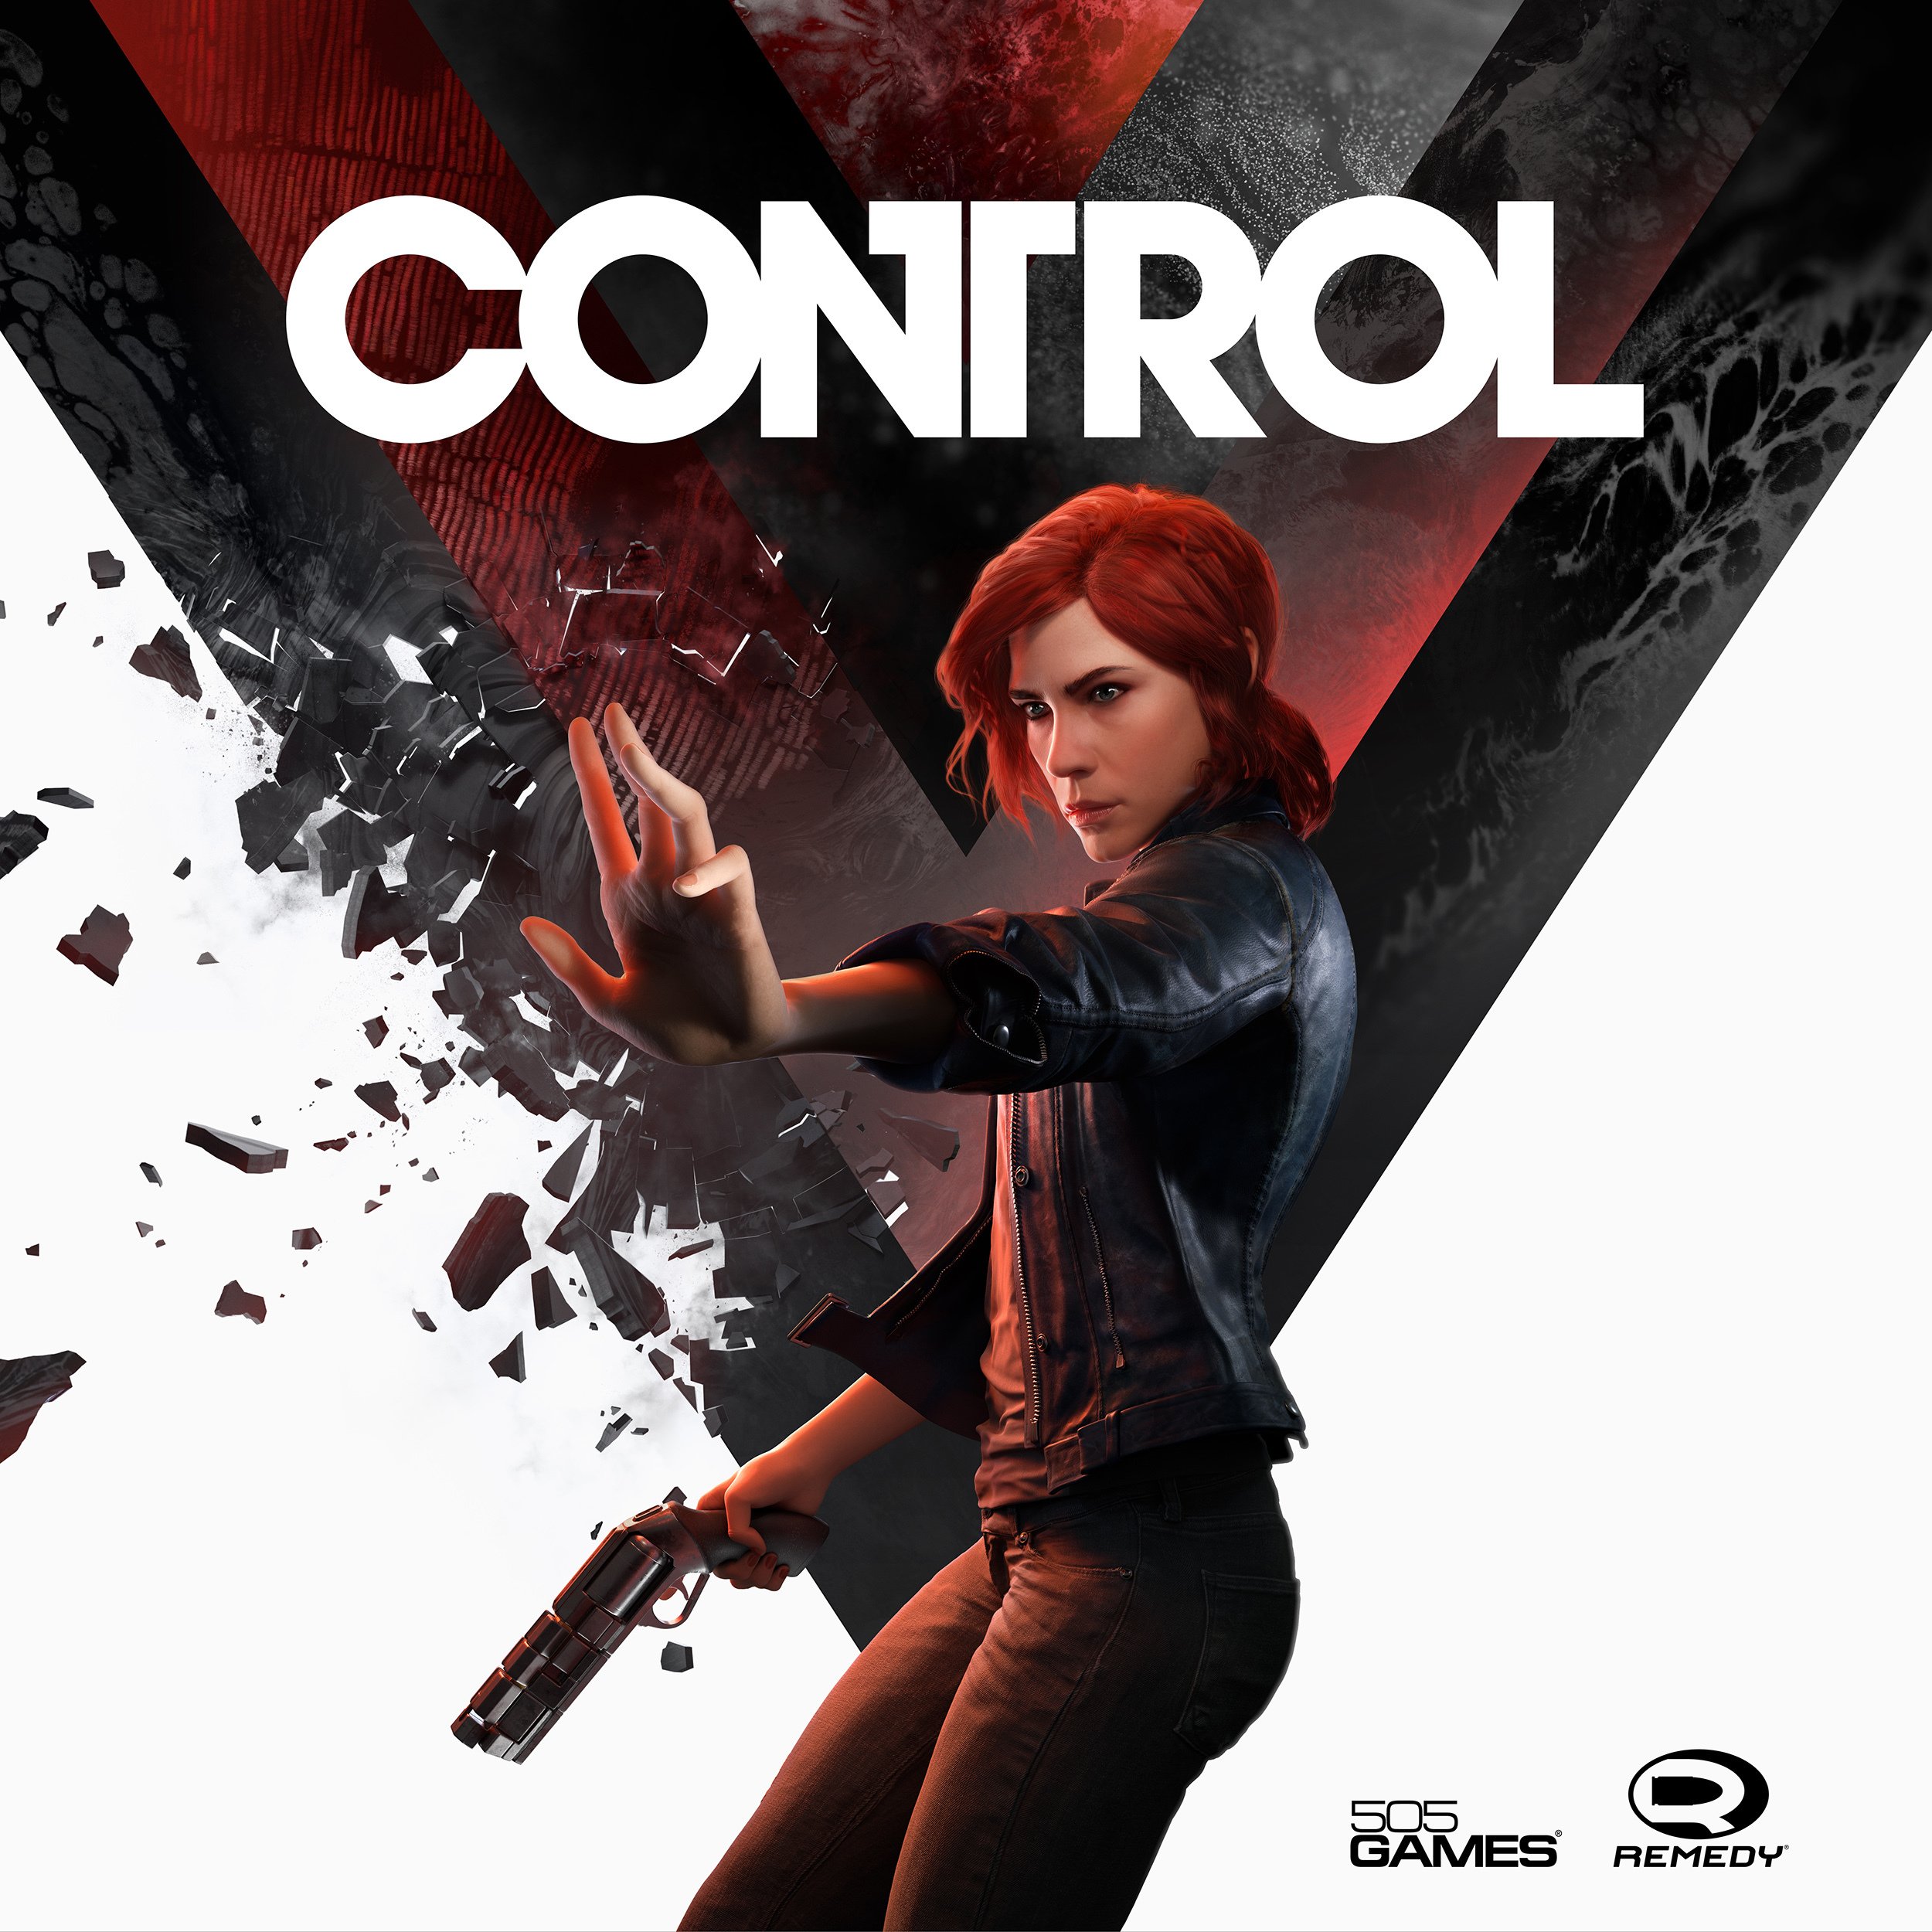 Control - 505 Games reveals “CONTROL”